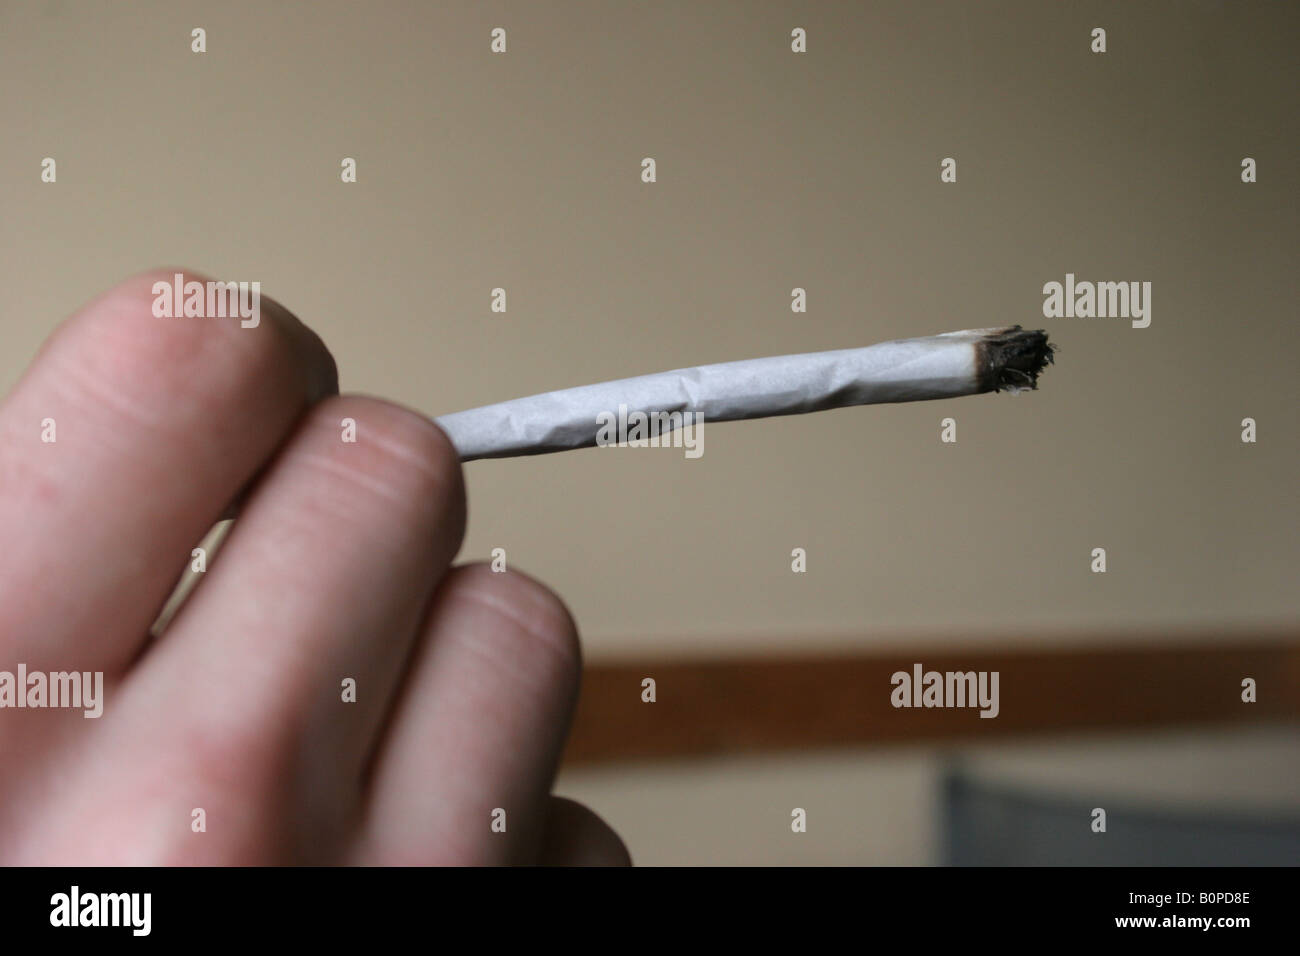 Ein Cannabis Spliff Zigarette oder Joint geraucht, Amsterdam, Holland, Niederlande. Stockfoto